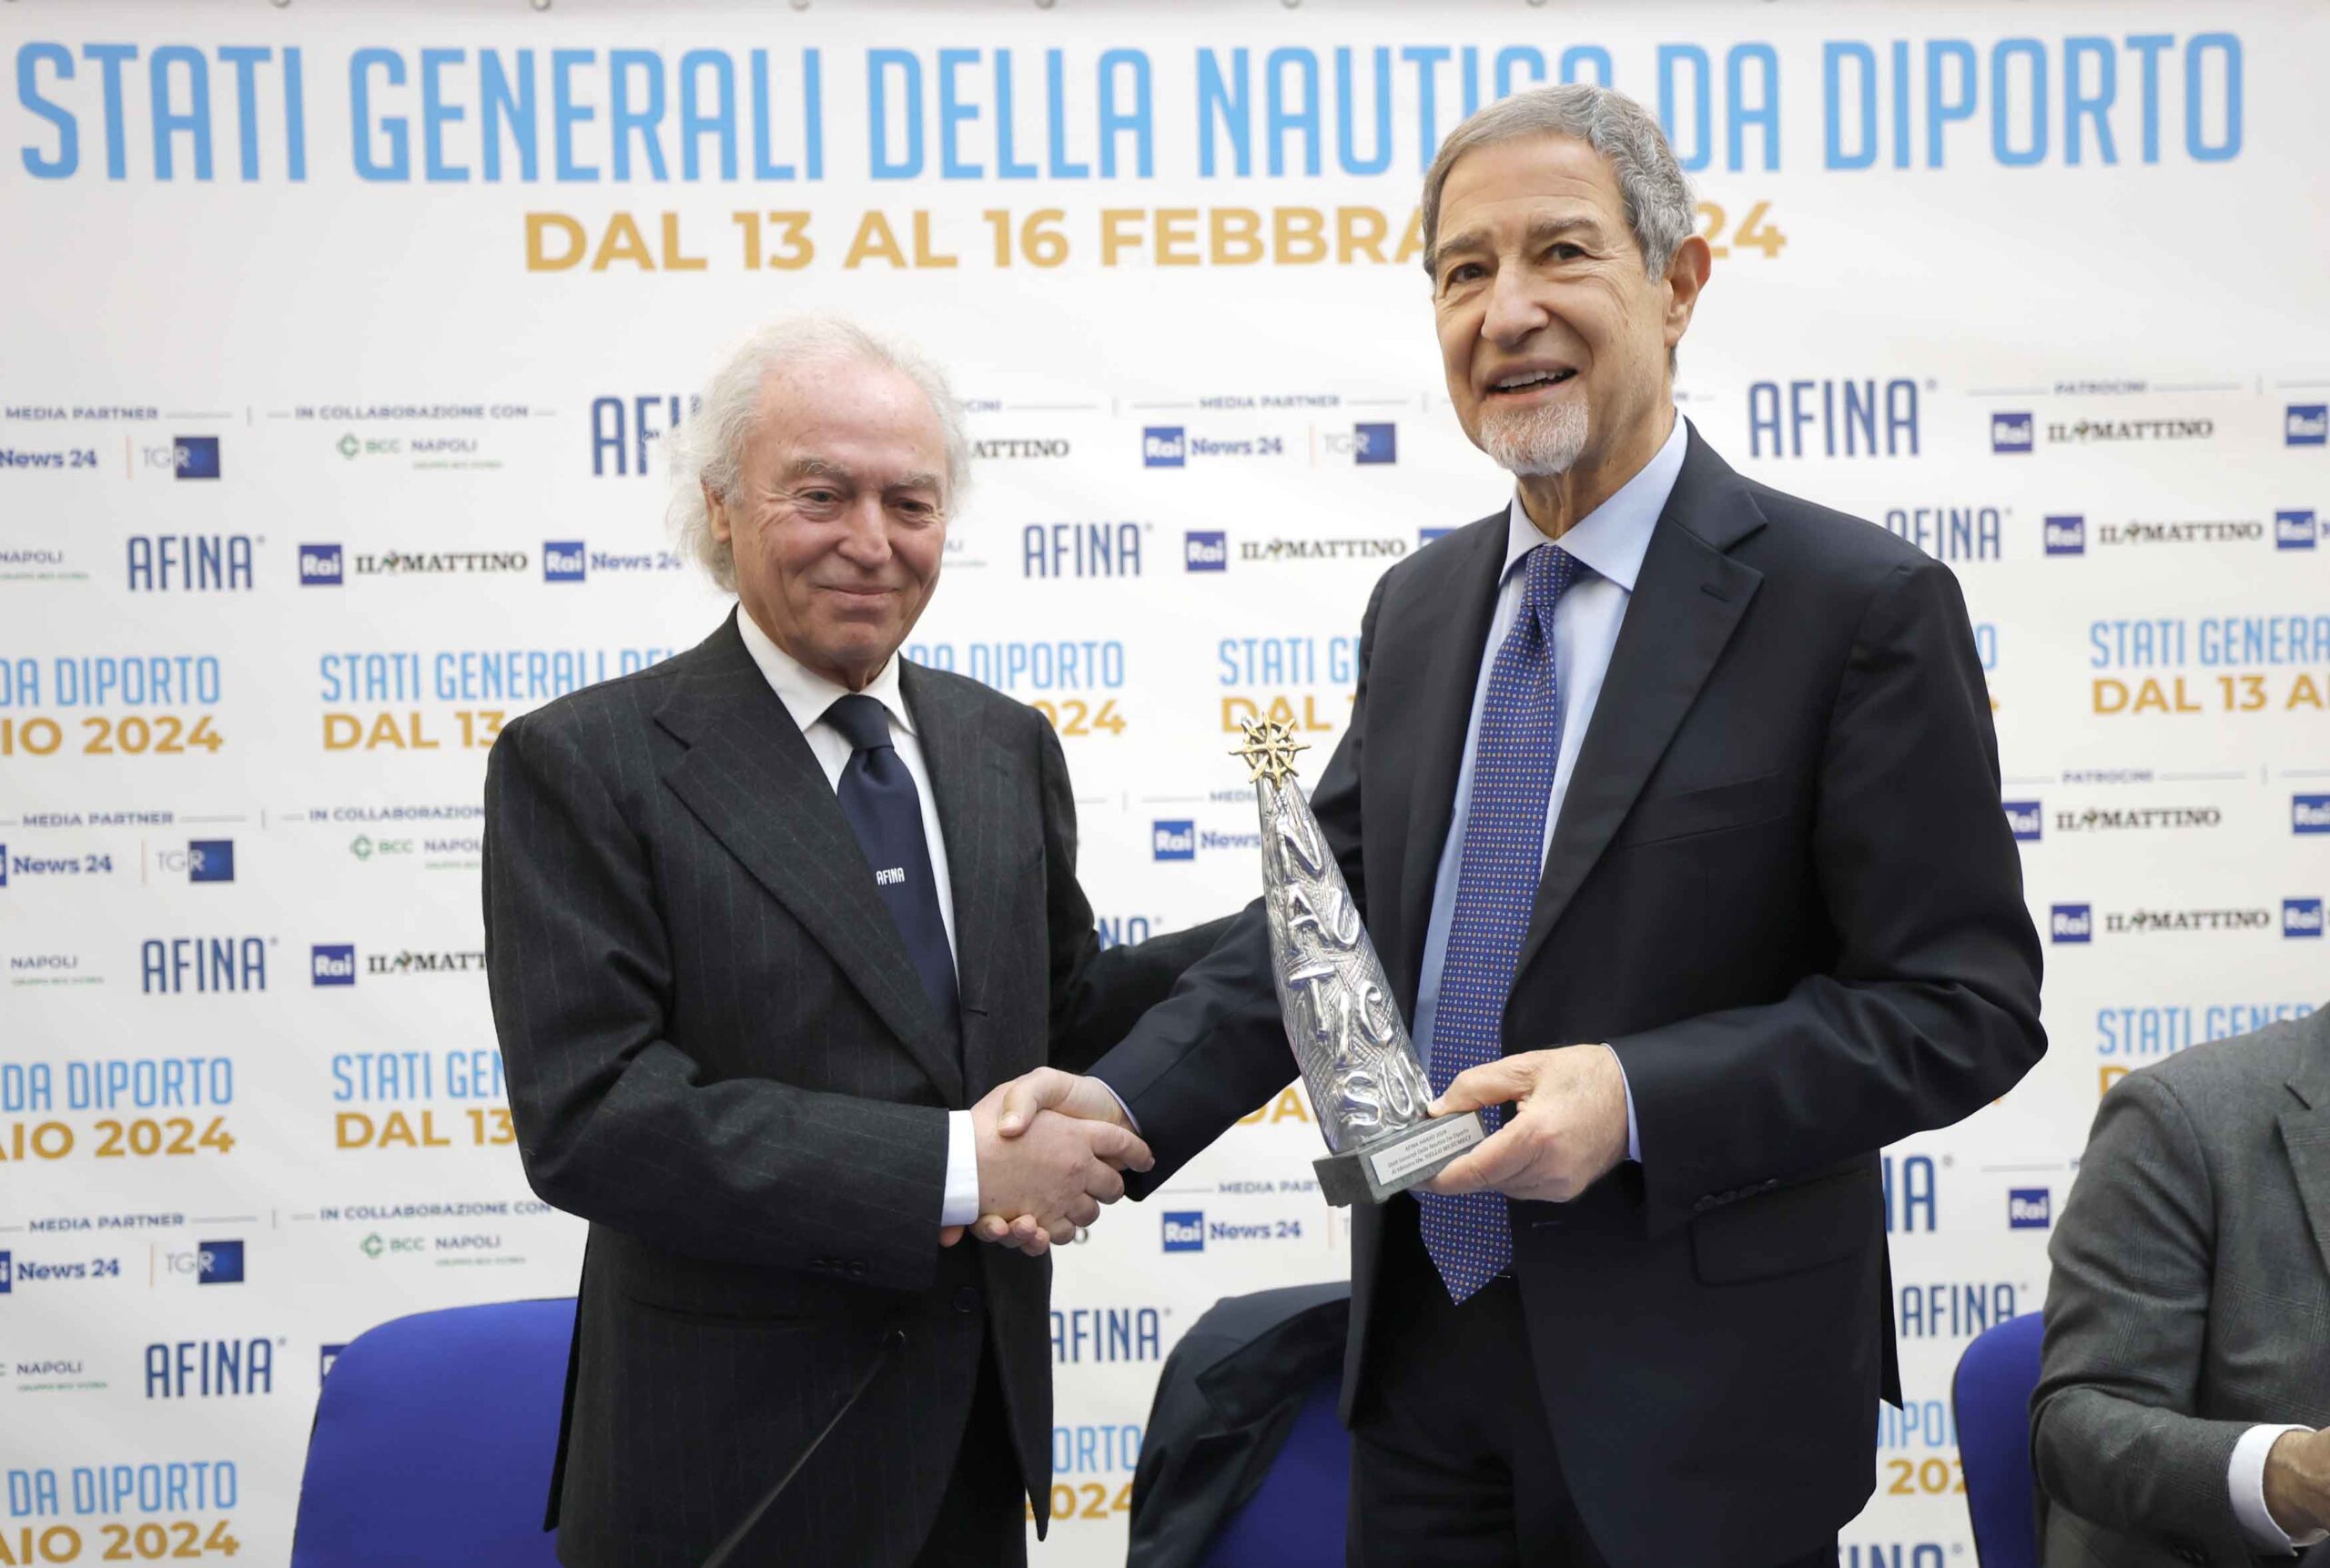 Il ministro Musumeci, agli Stati Generali della Nautica da Diporto a Napoli:  "Se mancano i posti barca bisogna crearli" - il nautilus